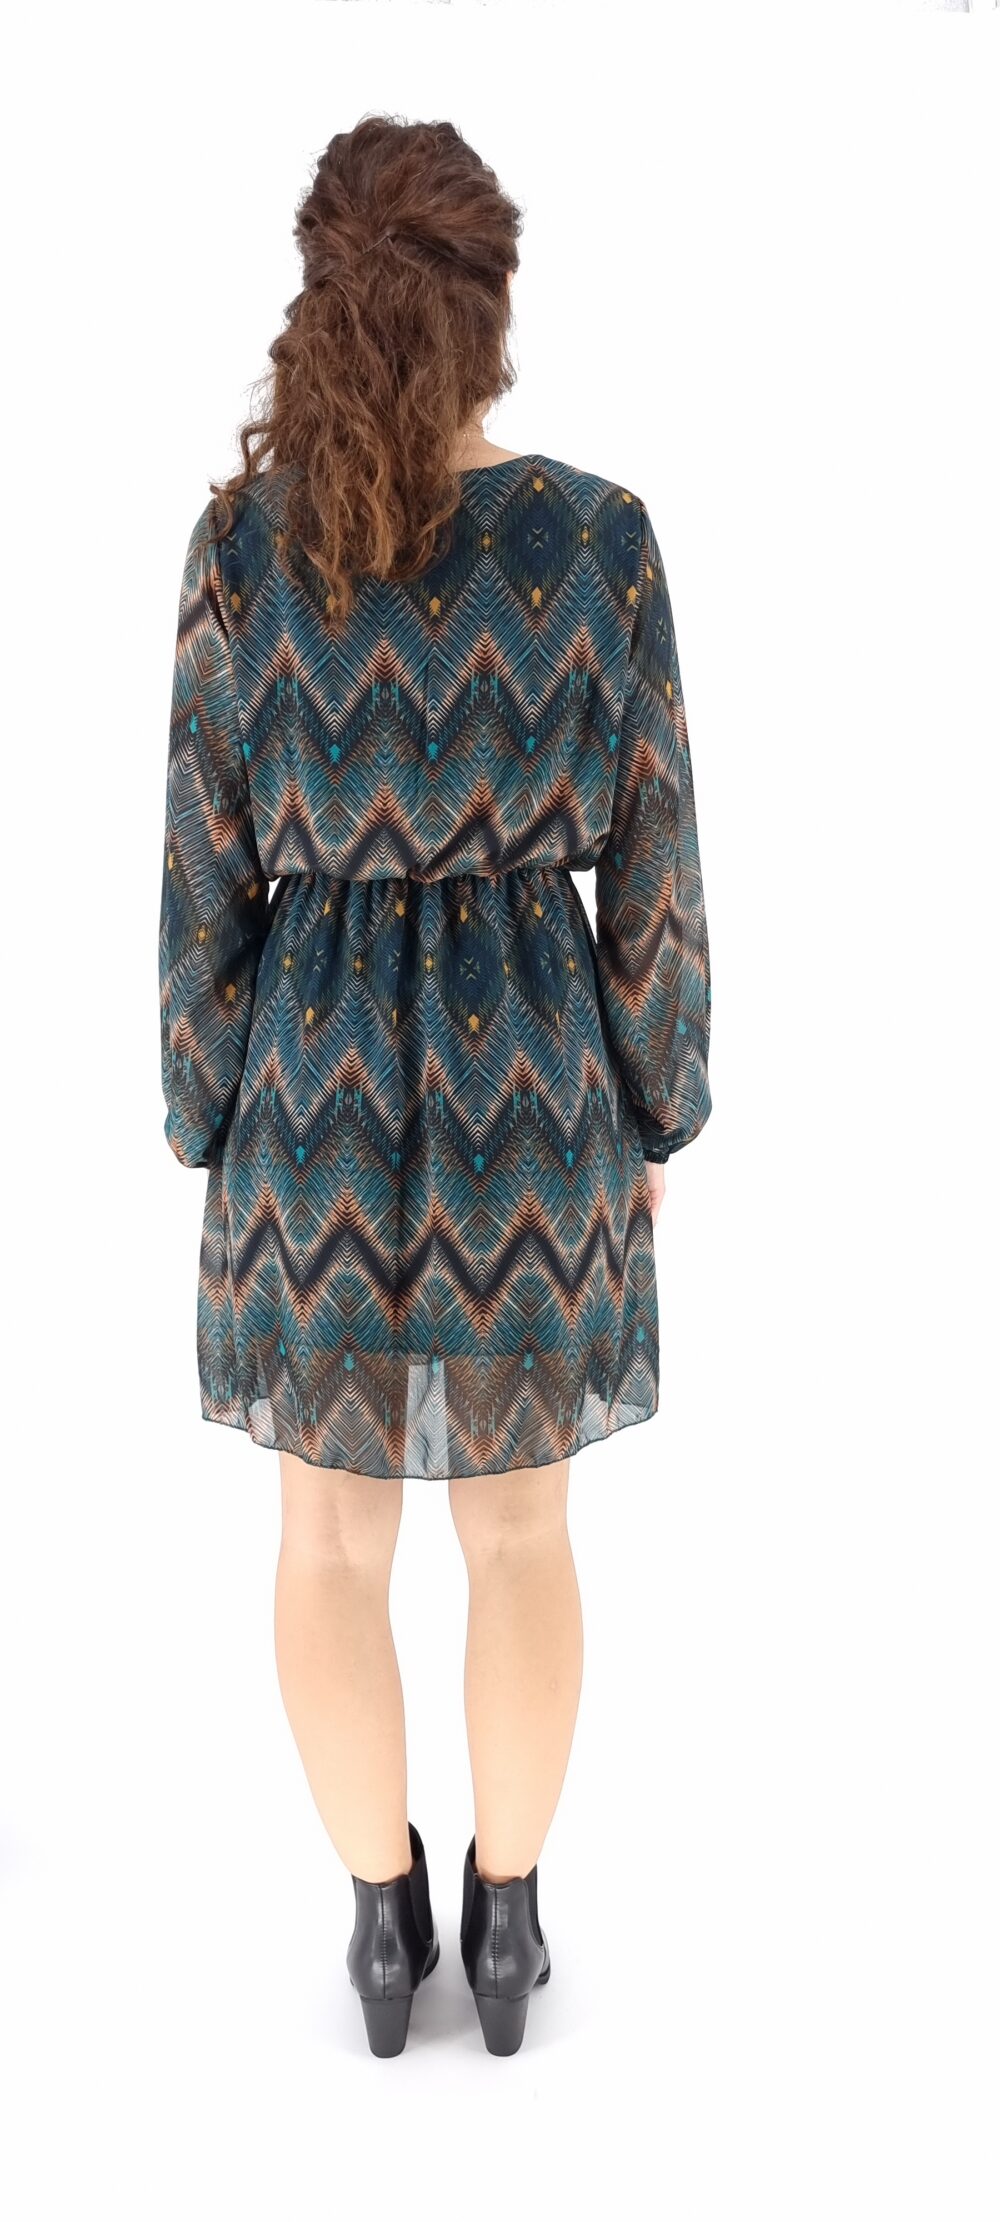 Φόρεμα κοντό κρουαζέ με πολύχρωμο μοτίβο σε μπλε αποχρώσεις